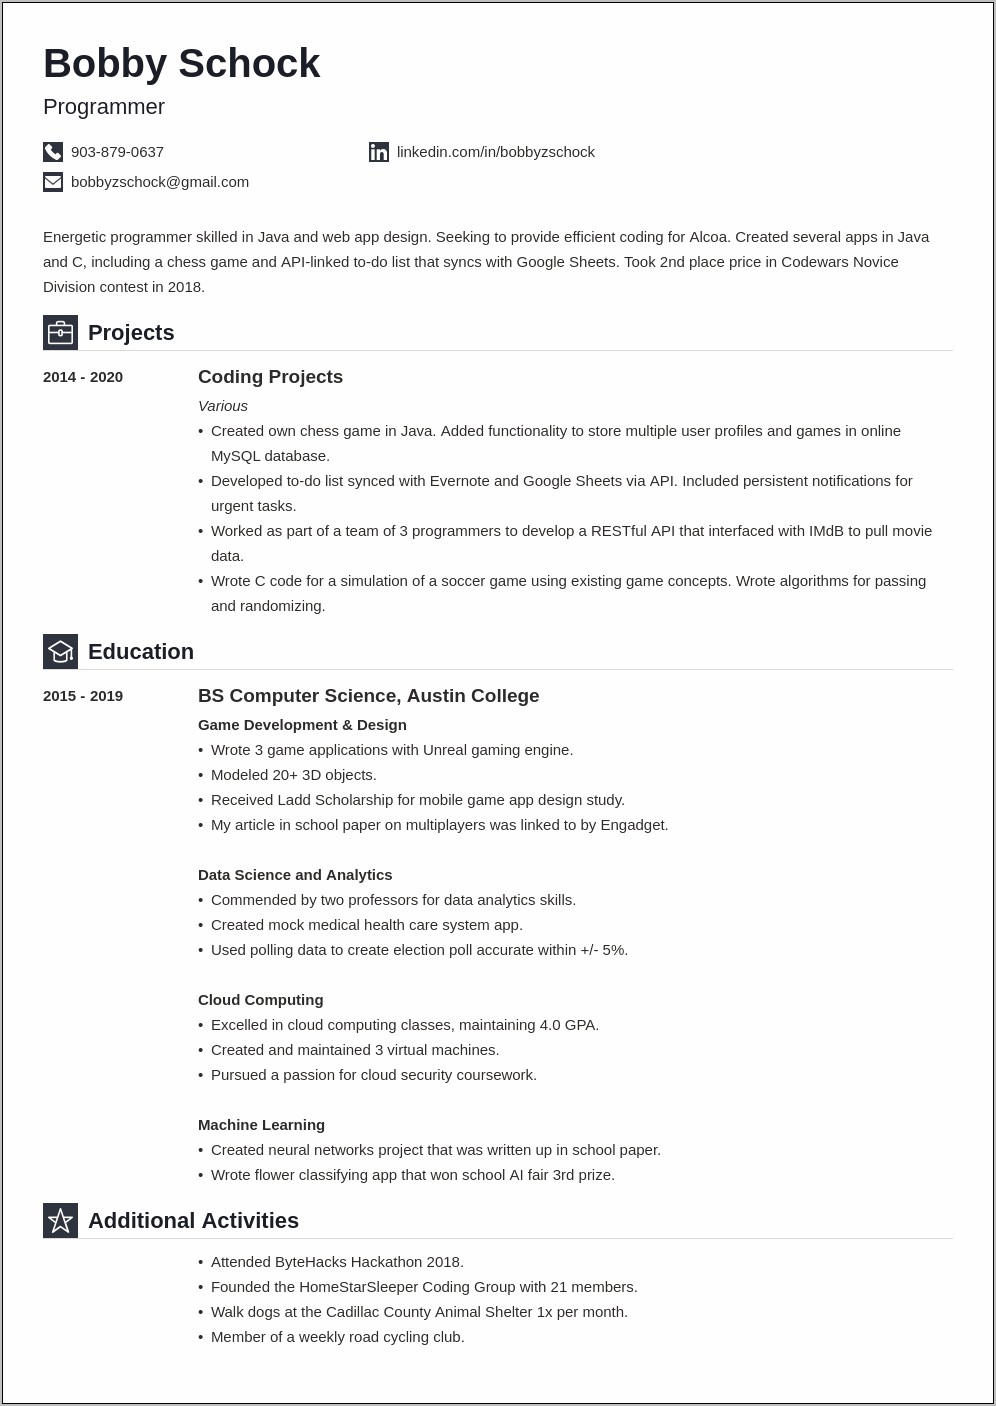 Sample Resume Format For Beginners